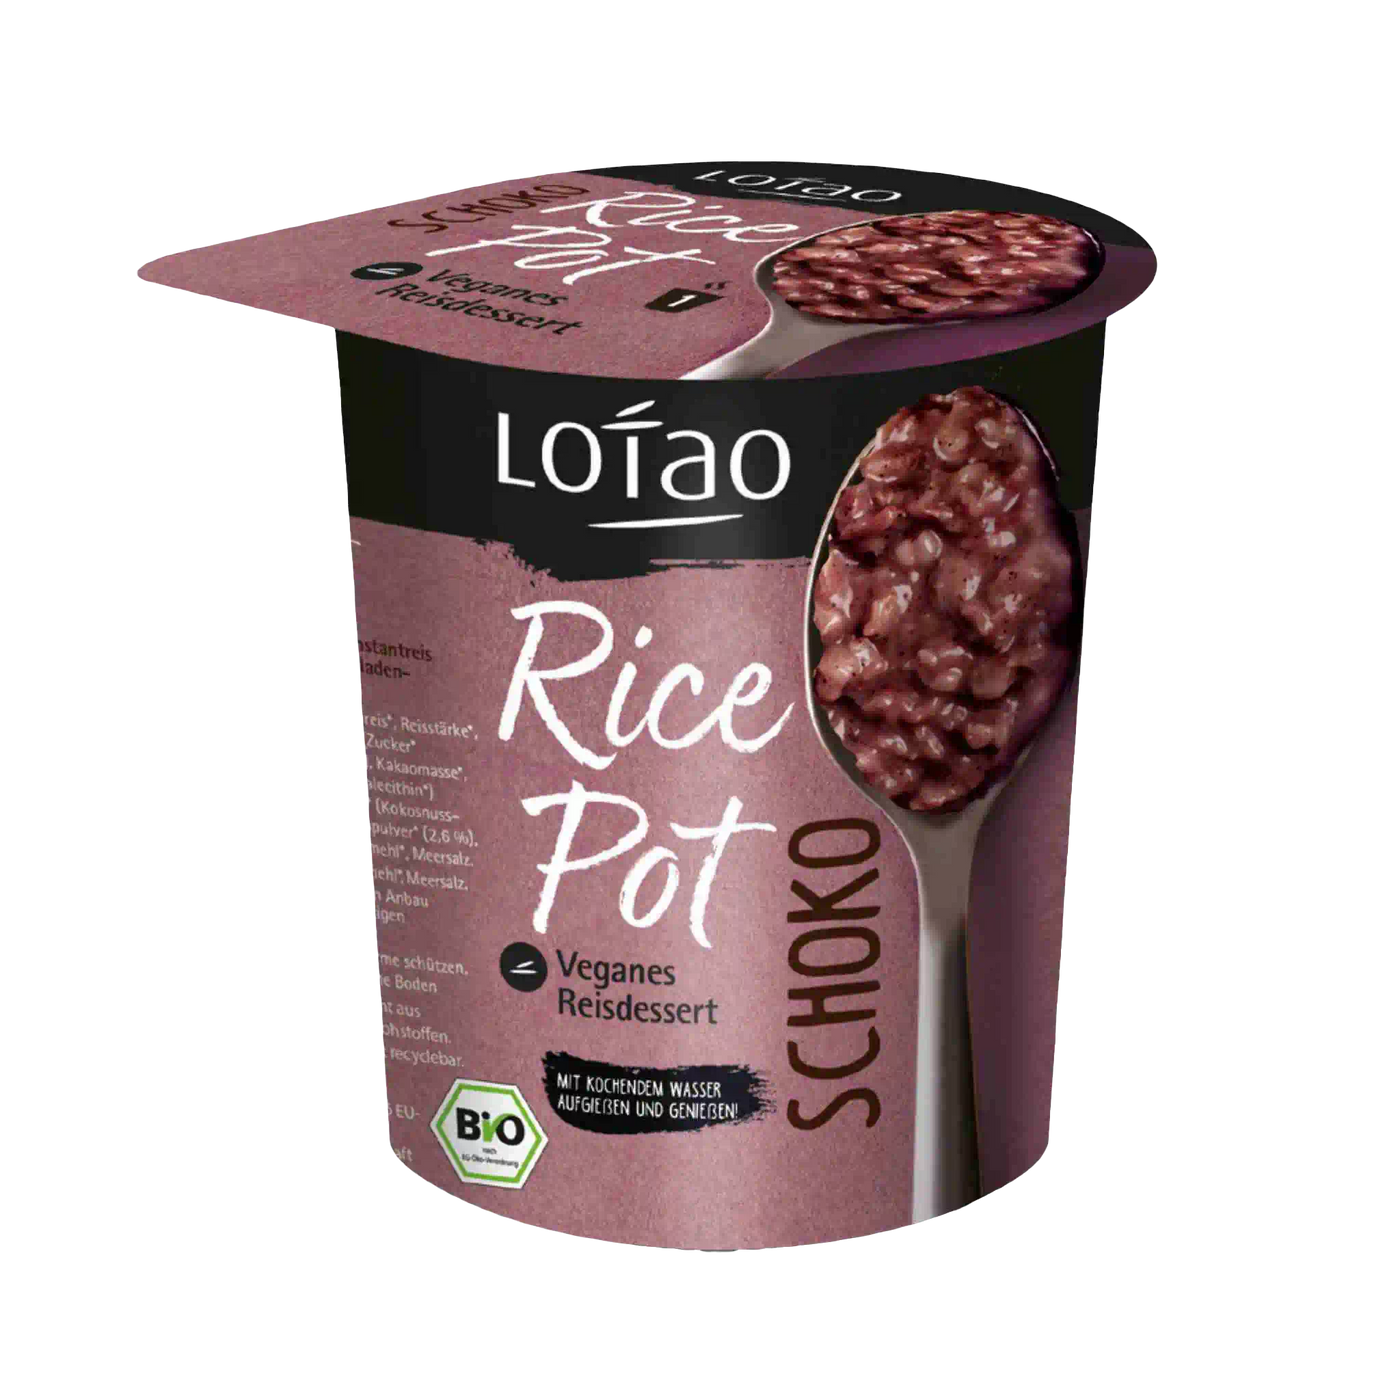 Lotao Rice Pot Schokolade